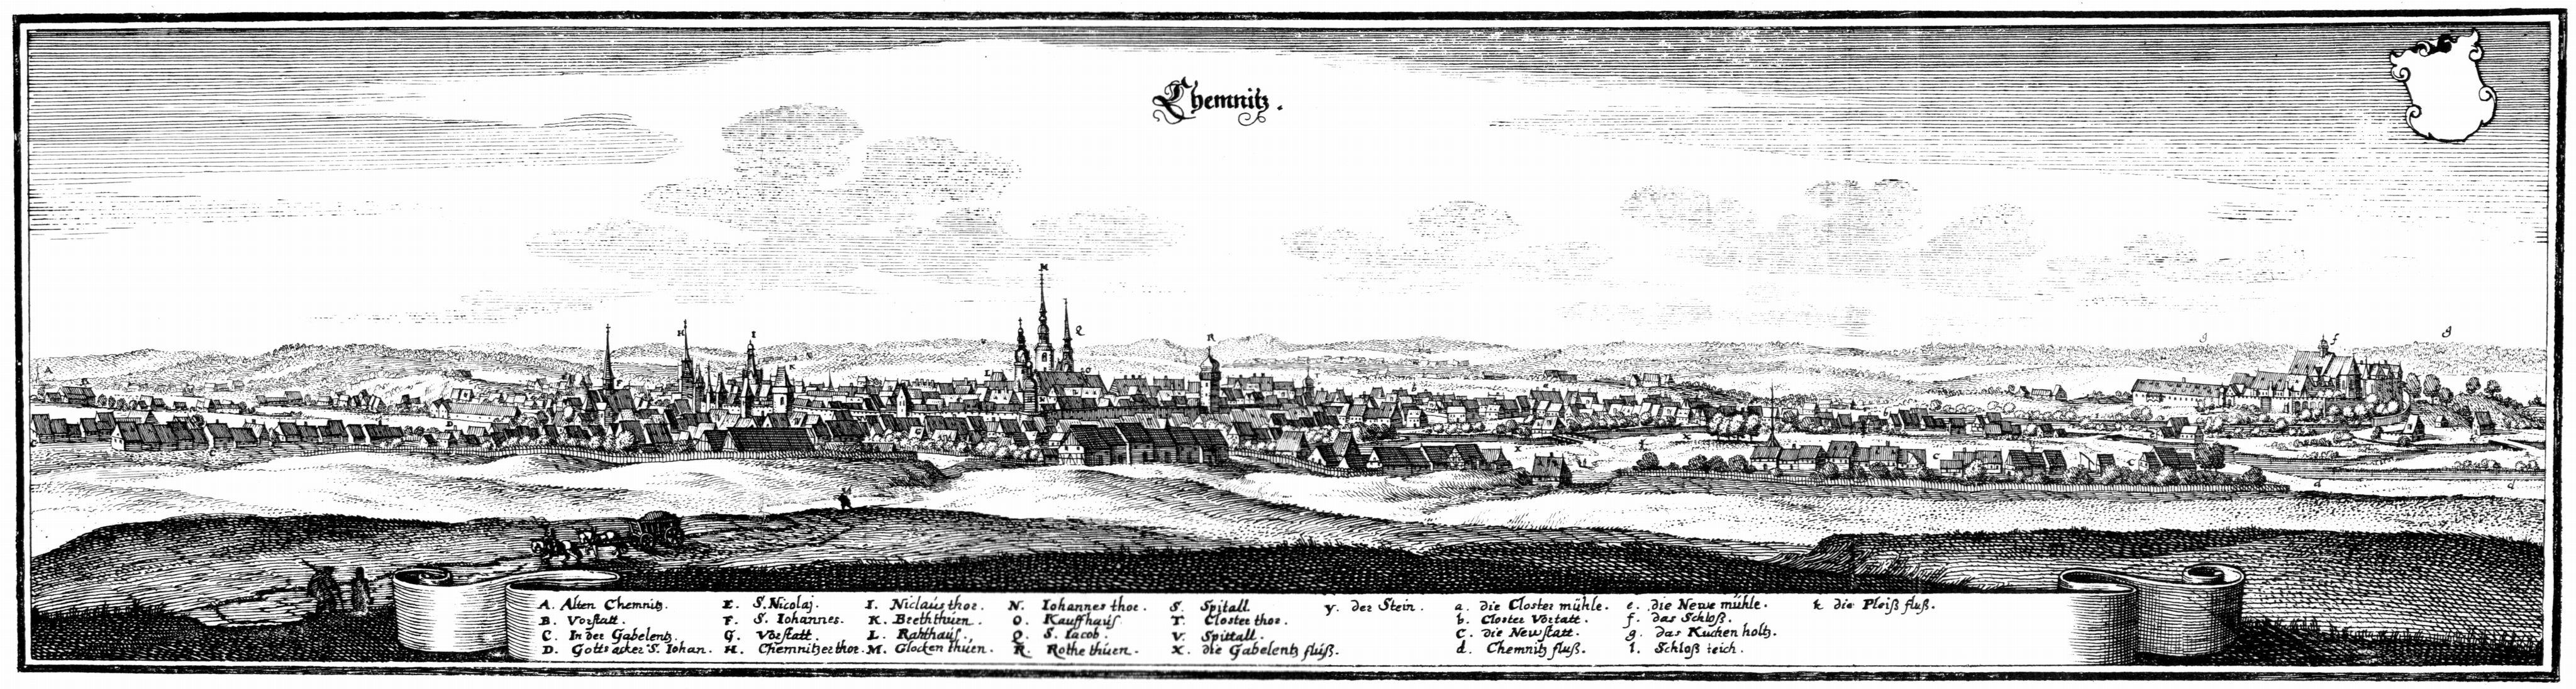  Ansicht von Chemnitz, Kupferstich von Matthäus Merian d. Ä. in Topographia Germaniae, herausgegeben 1650